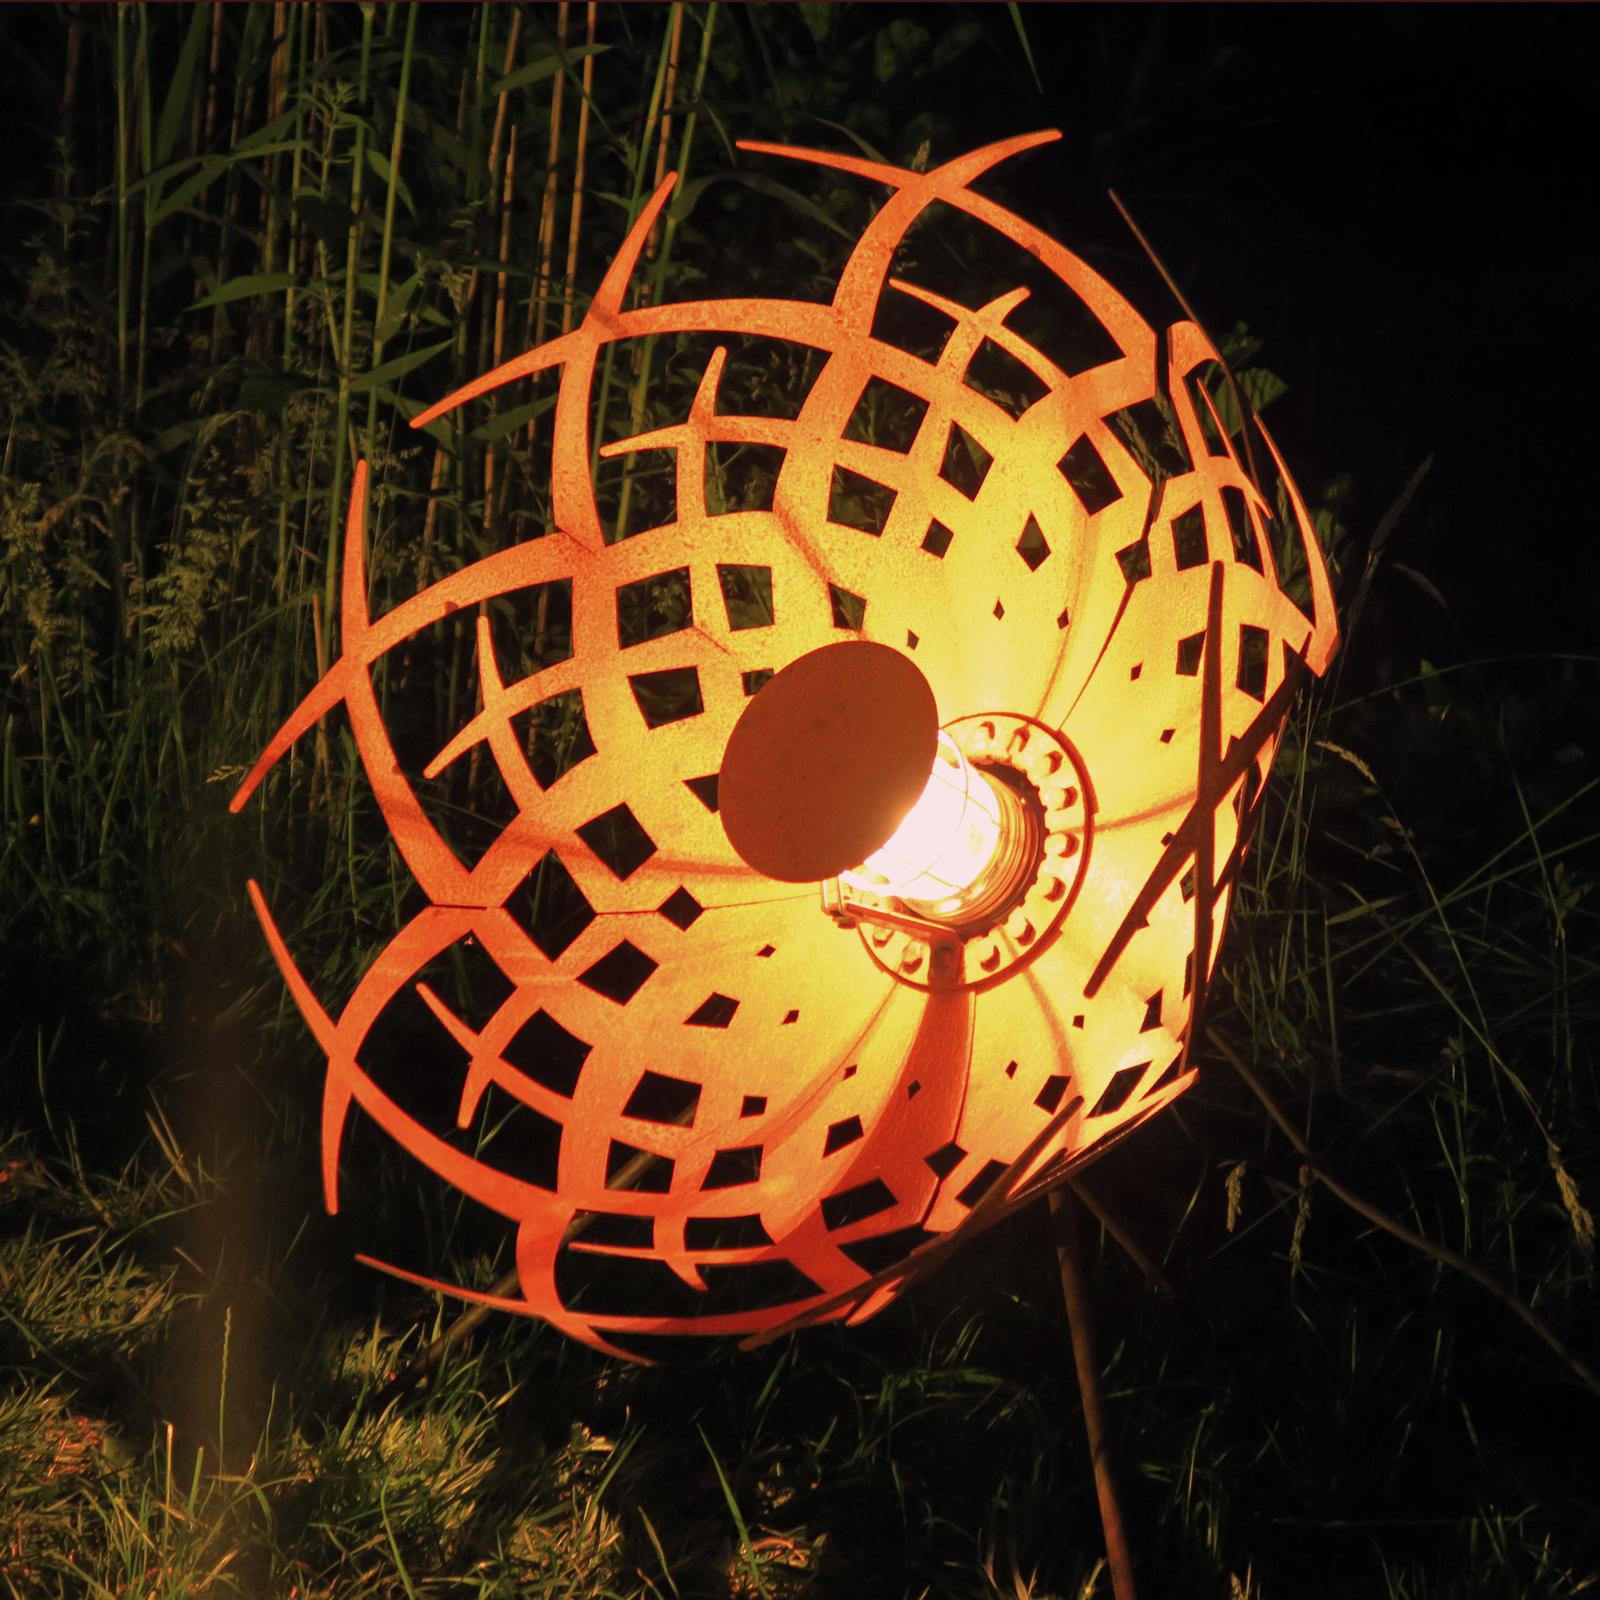 Outdoor Lamp - "Umbrella" - unique rusty ornament